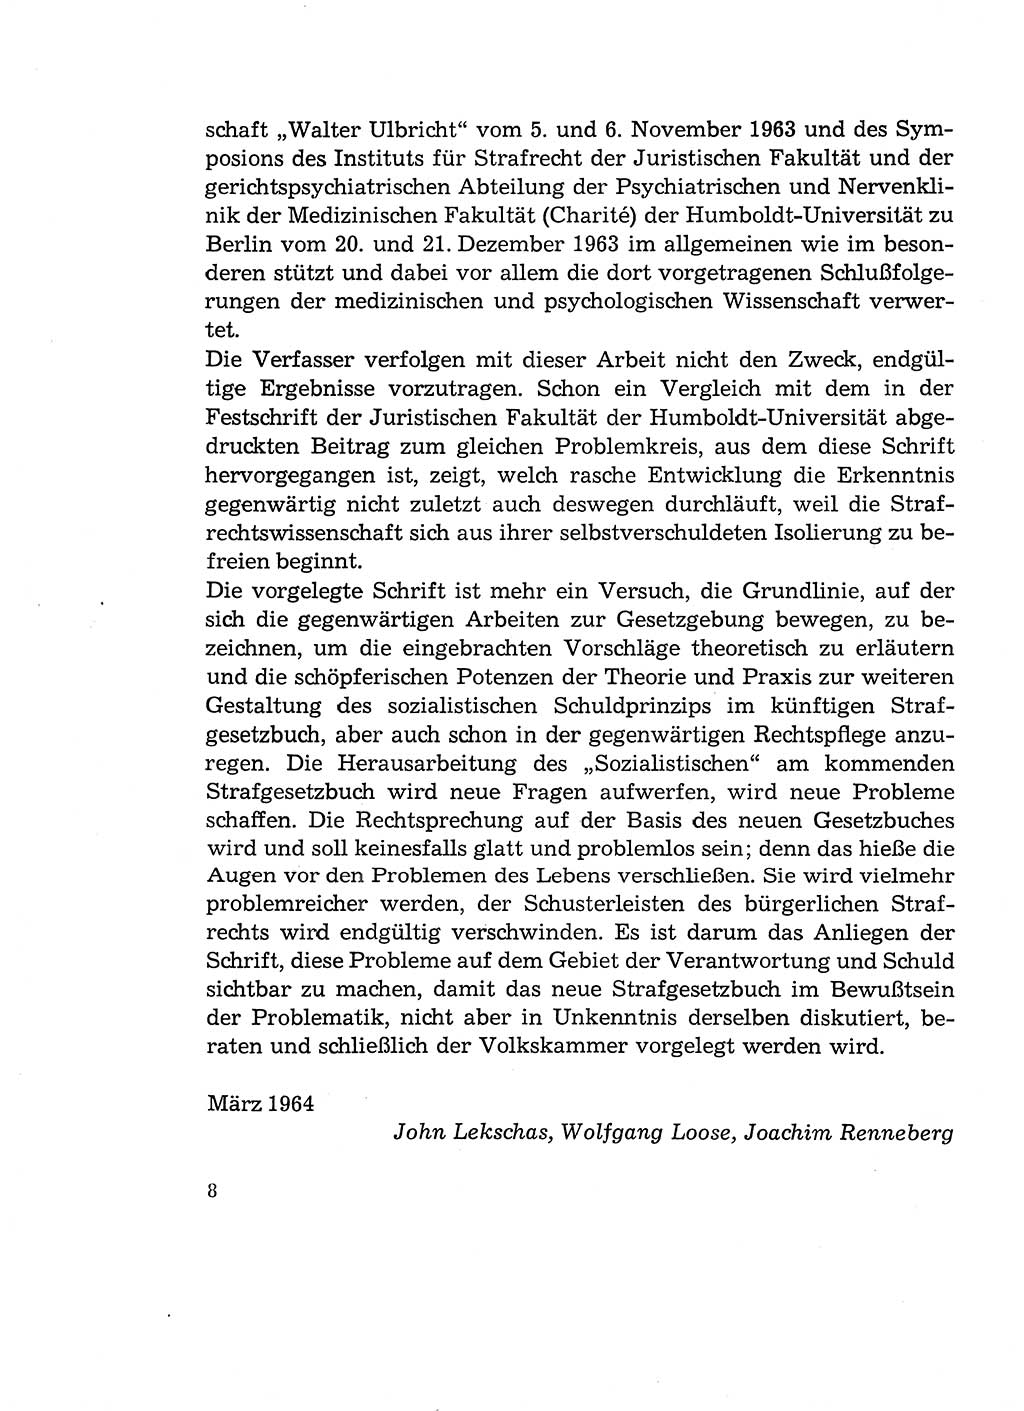 Verantwortung und Schuld im neuen Strafgesetzbuch (StGB) [Deutsche Demokratische Republik (DDR)] 1964, Seite 8 (Verantw. Sch. StGB DDR 1964, S. 8)